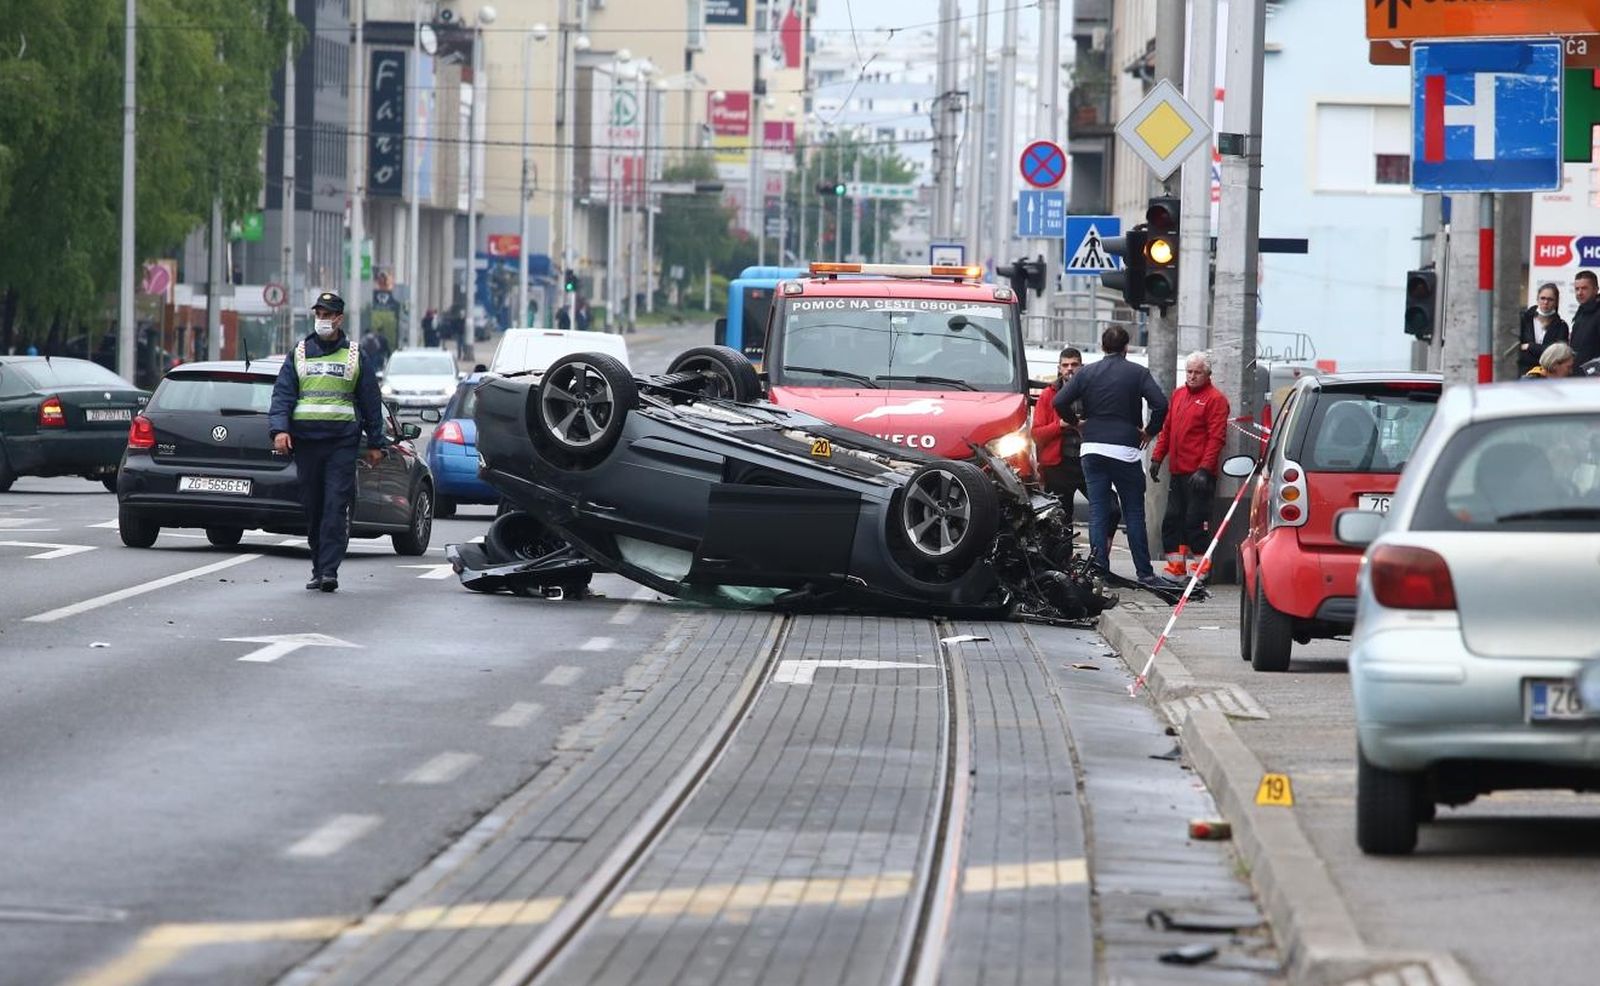 26.04.2021., Zagreb - Prometna nesreca na Aveniji Dubrava gdje je vozac osobnog automobila izgubio kontrolu nad vozilom, udario u nekoliko parkiranih vozila te se prevrnuo na krov. Photo: Matija Habljak/PIXSELL